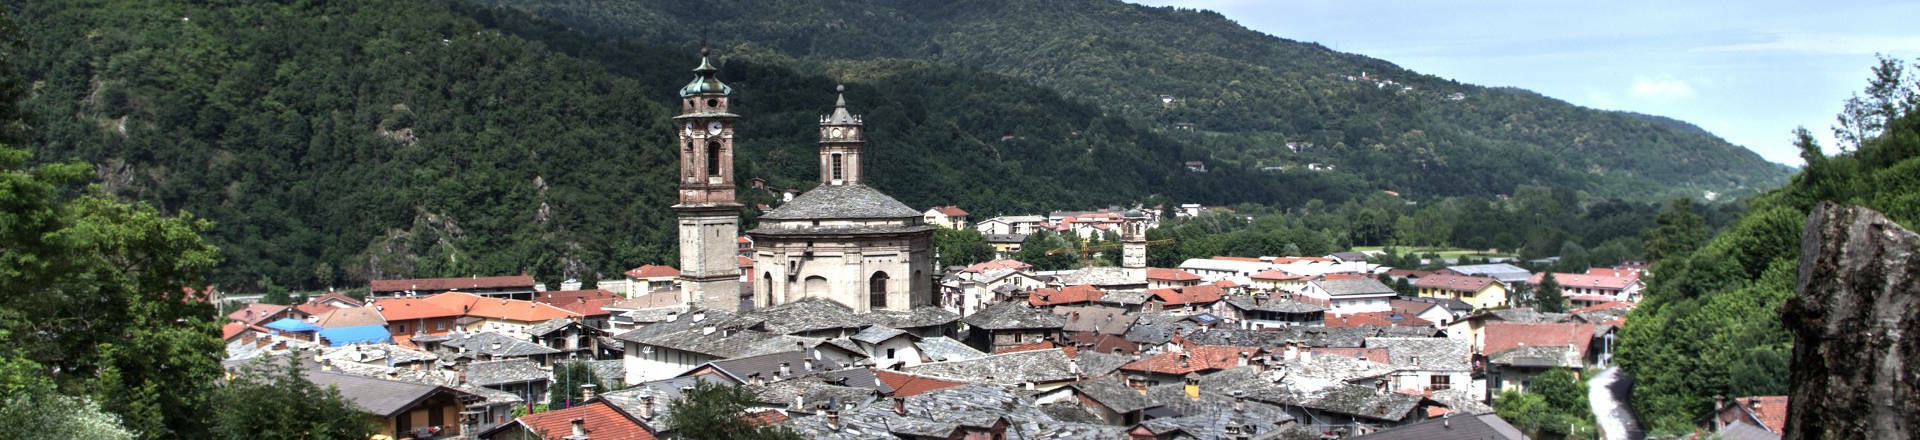 Il cimitero comunale di Venasca resterà chiuso per lavori